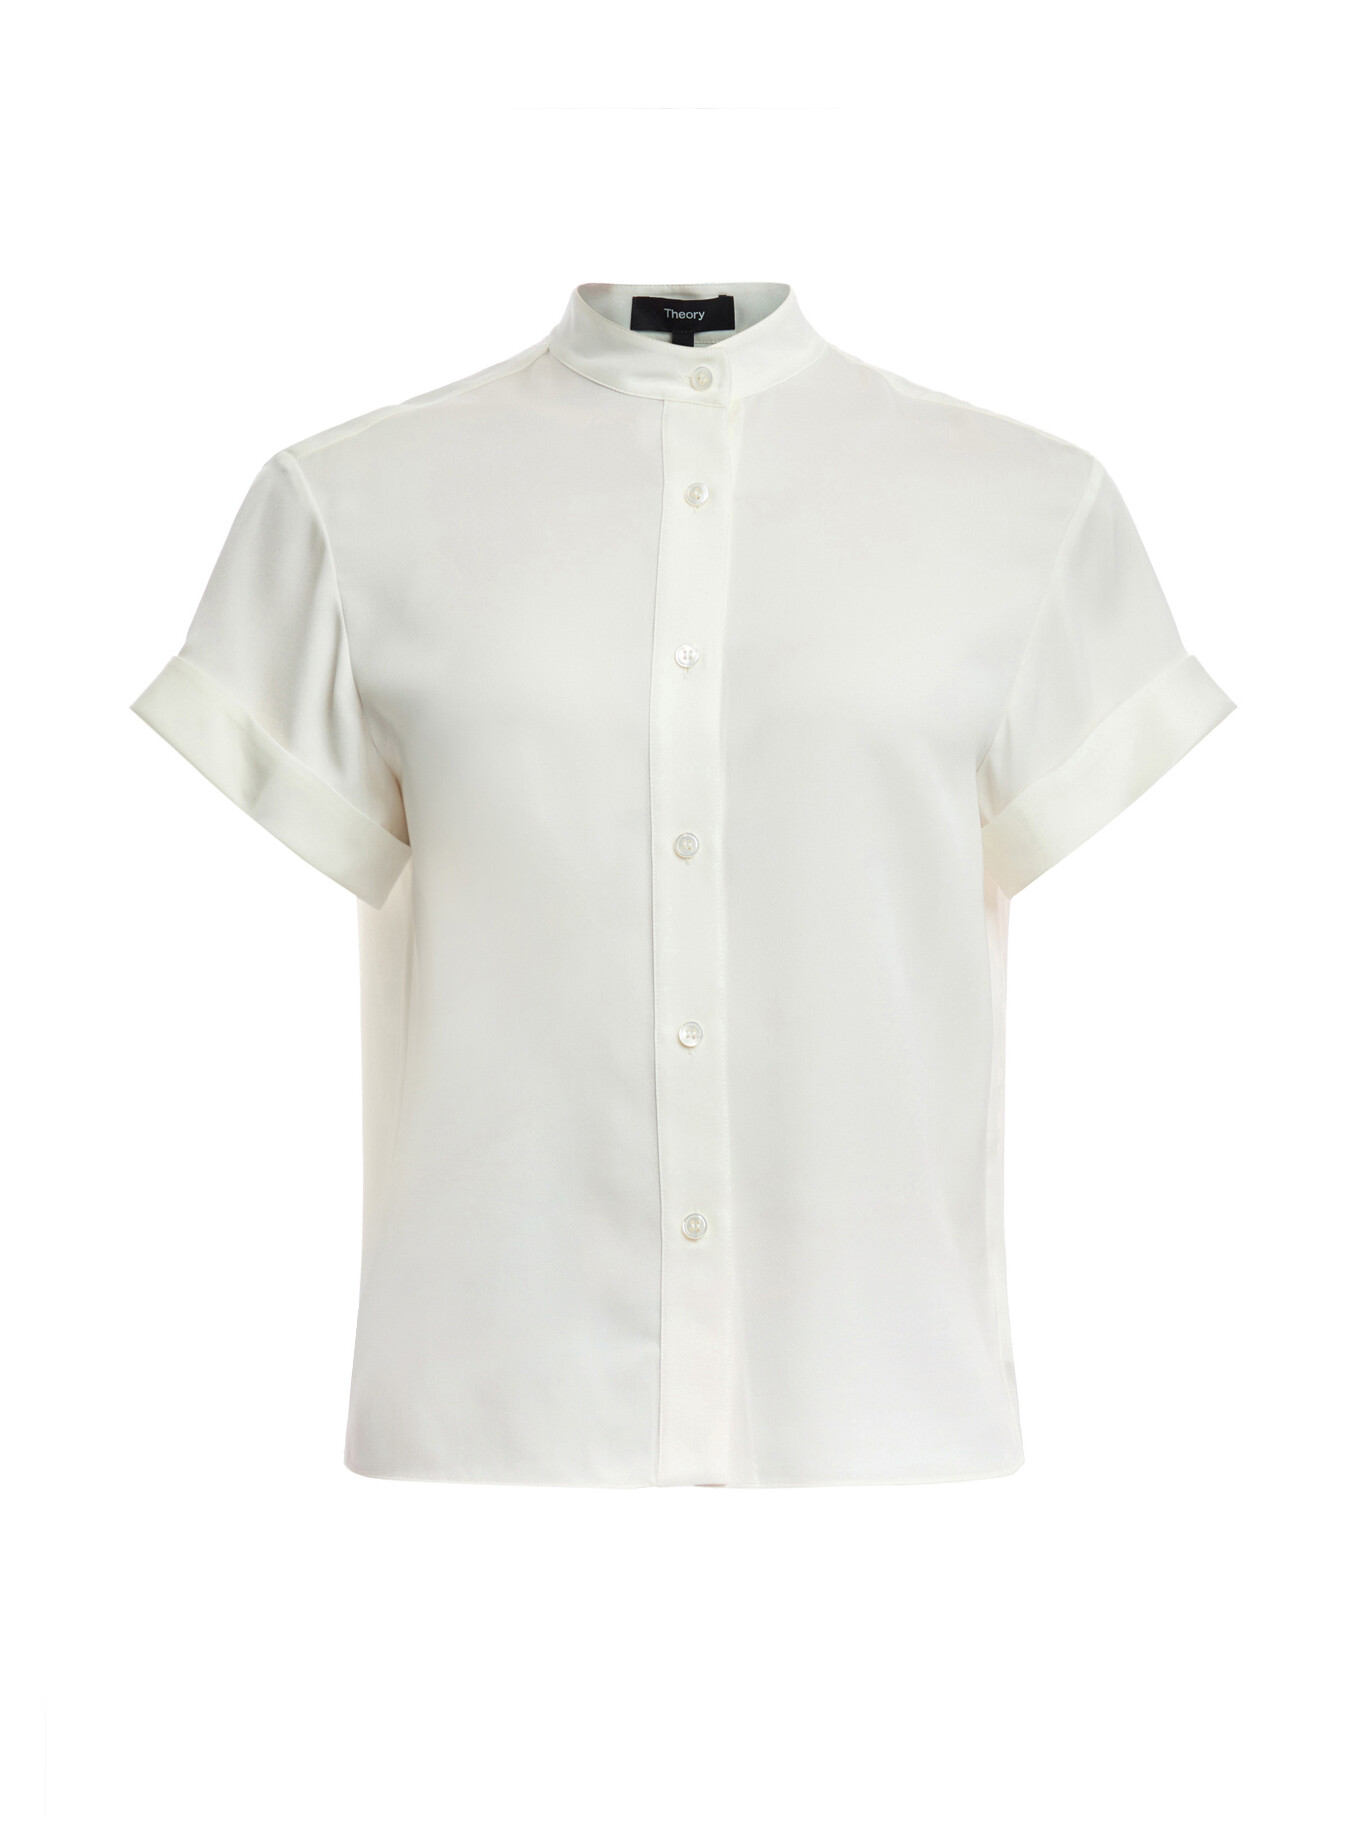 Theory Women's Short Sleeve Military Shirt White